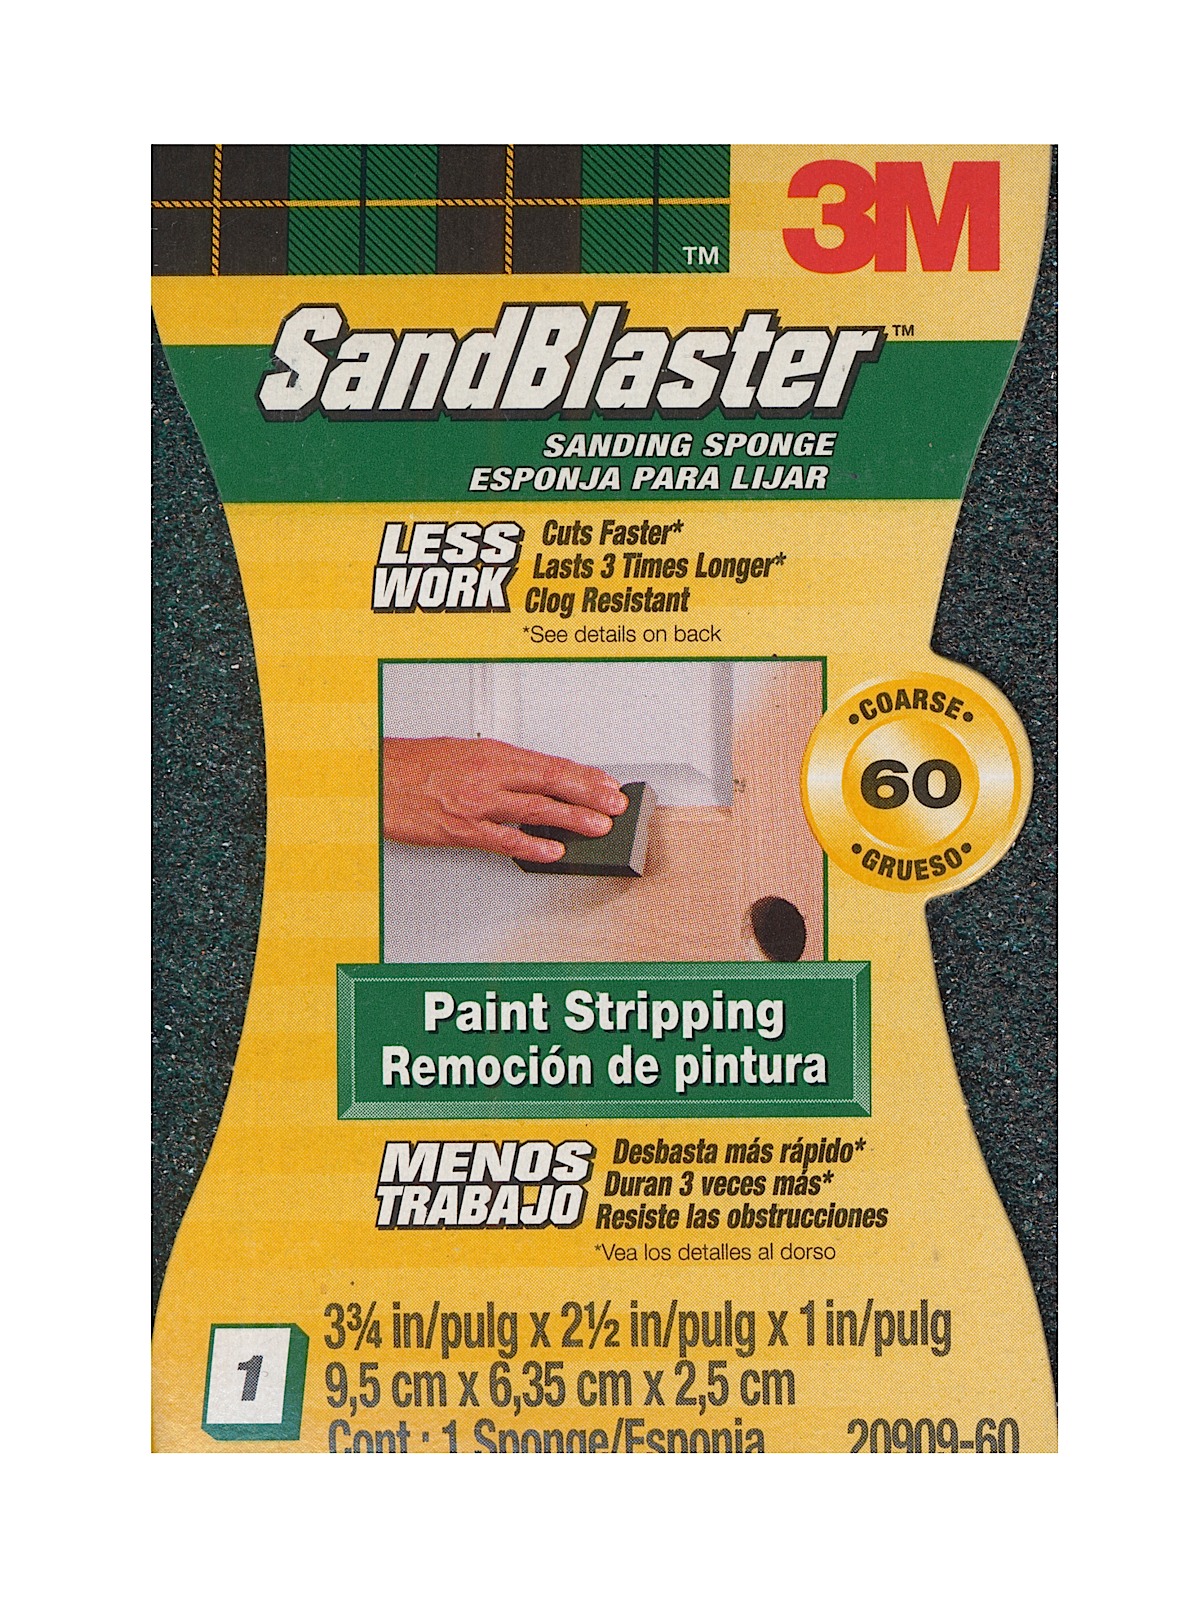 SandBlaster Sanding Pads And Sponges 60 Grit Sanding Sponge 20909-60